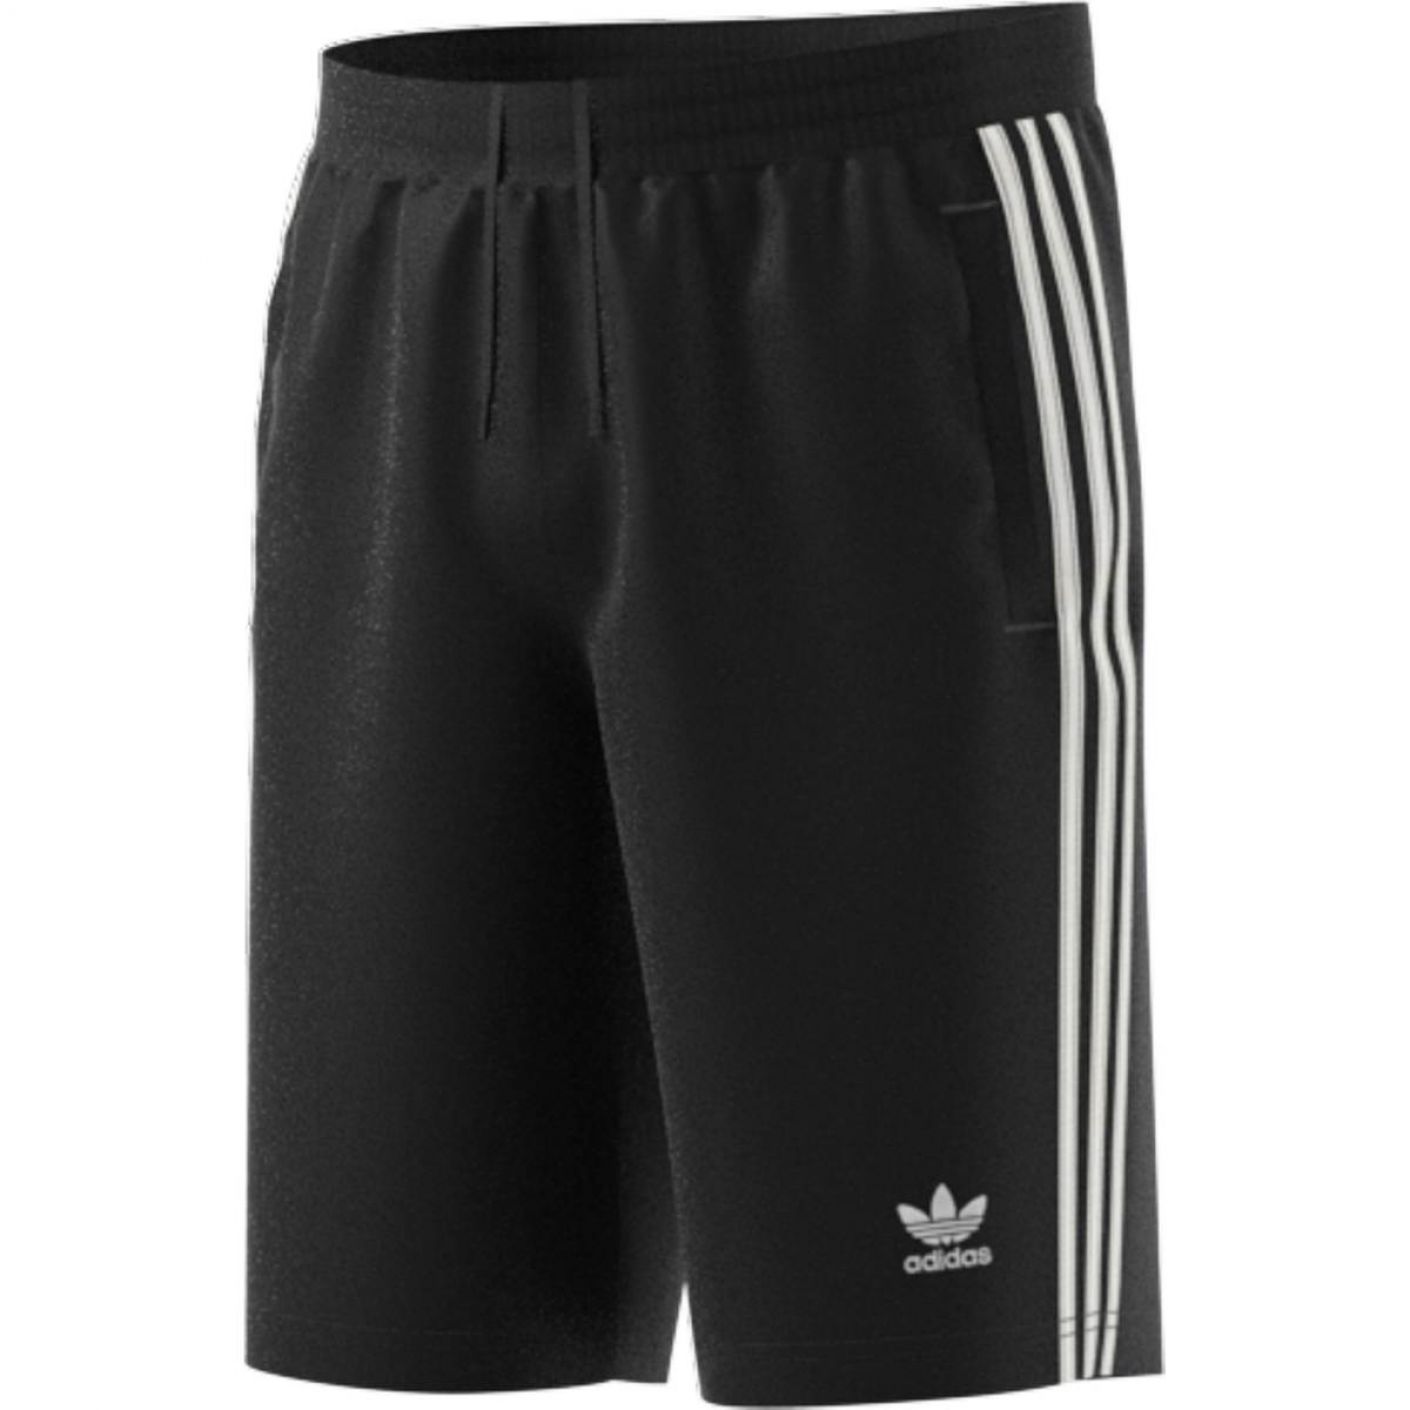 Adidas 3-Stripe Short Black for Men